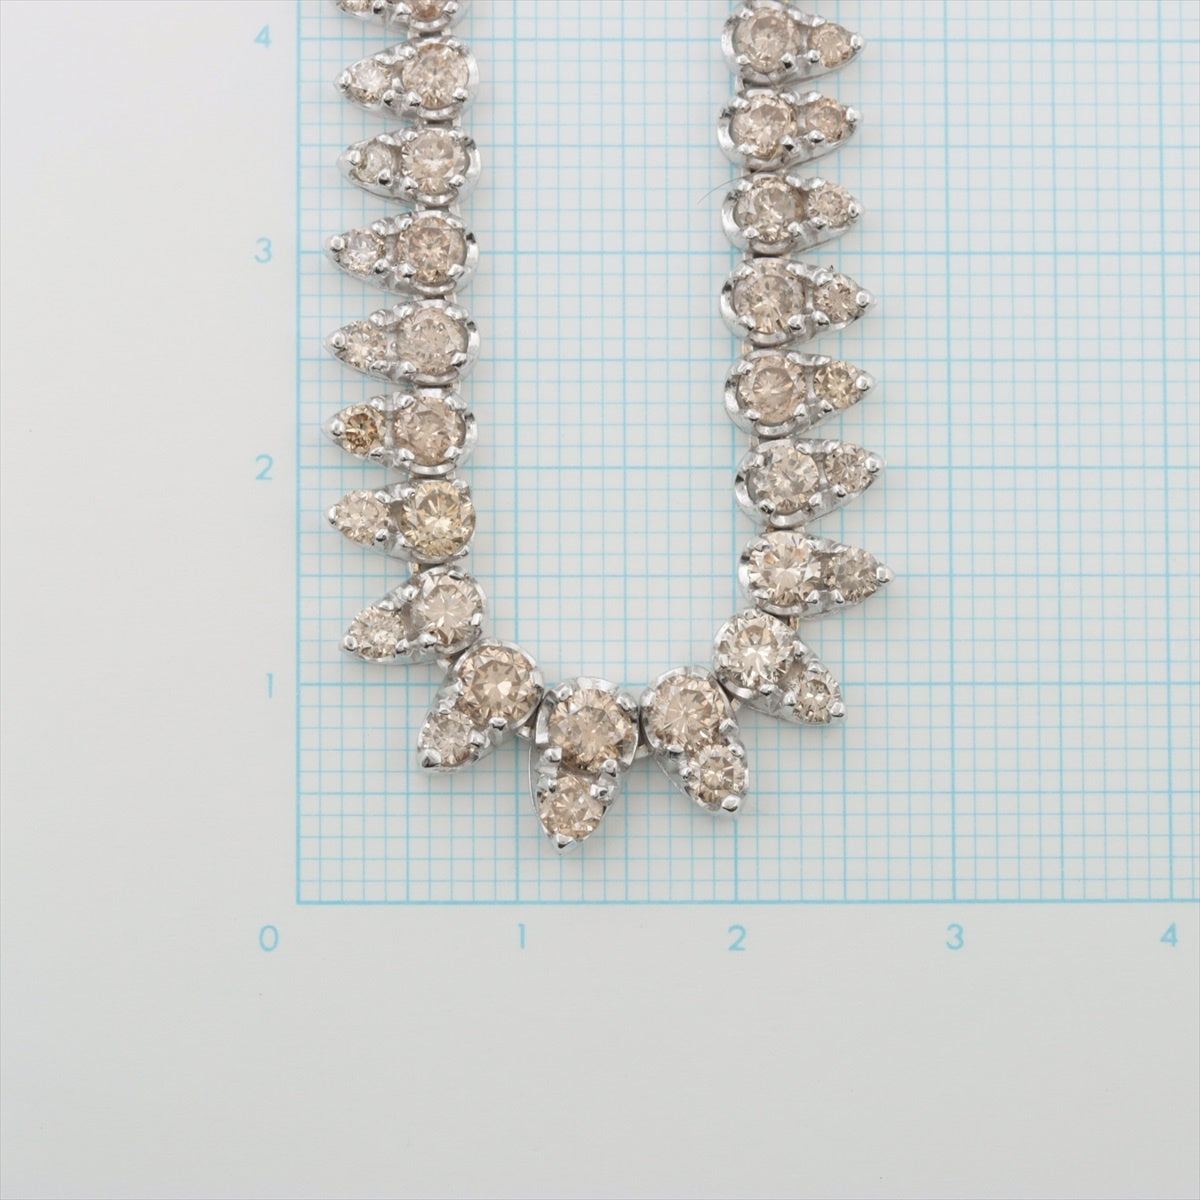 Diamond necklace K18 19.9g 1000